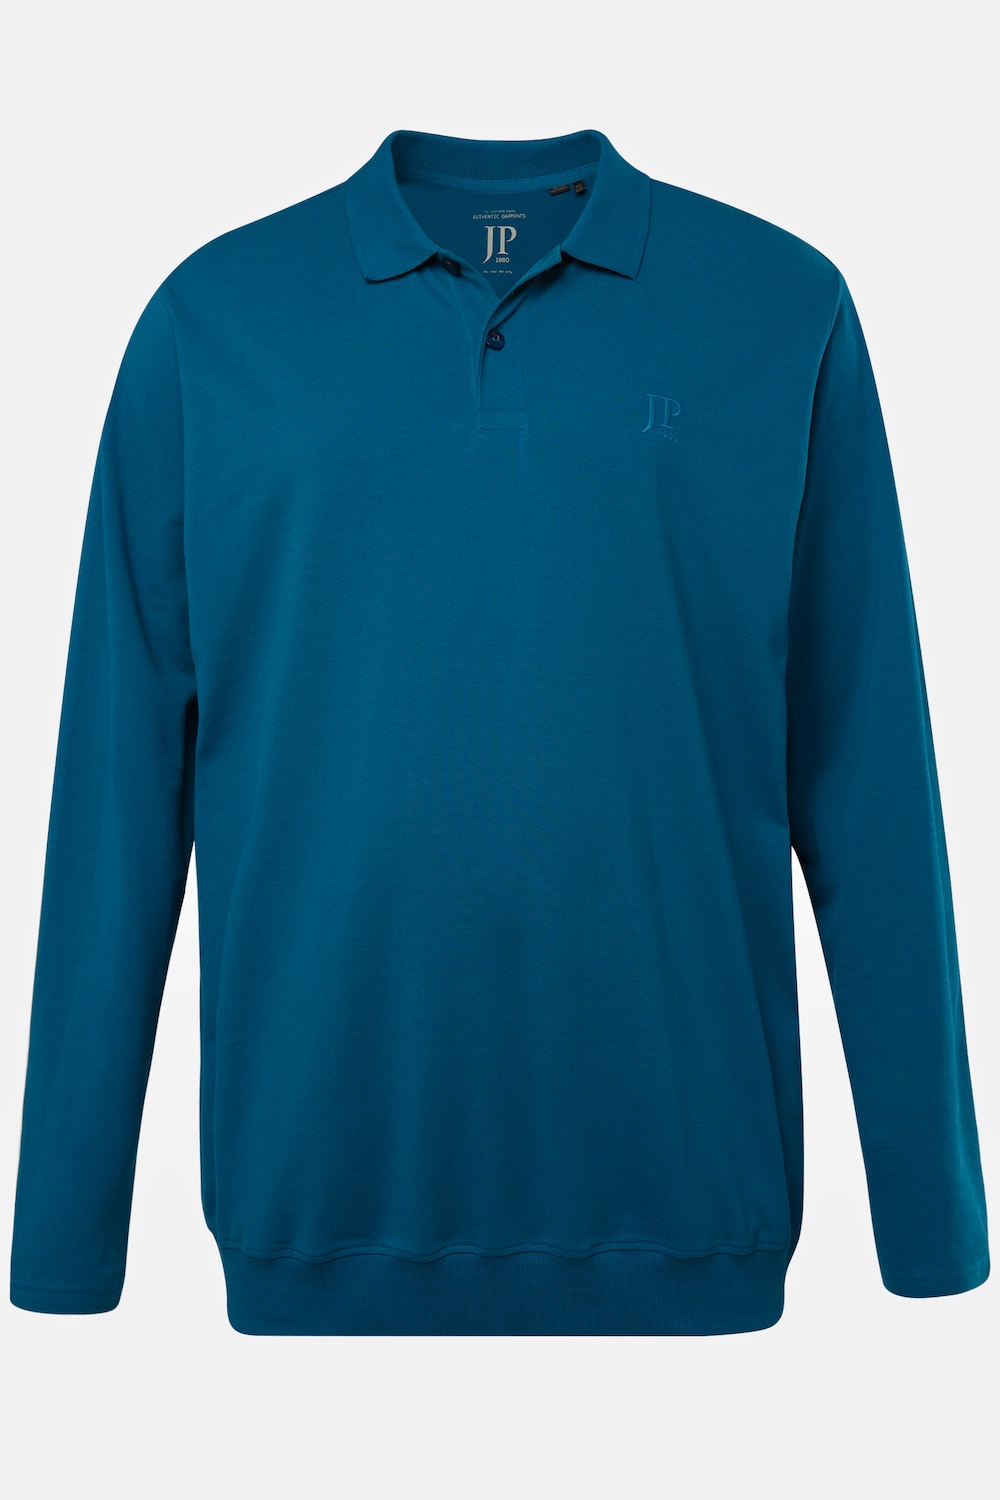 Grote Maten Poloshirt, Heren, blauw, Maat: 7XL, Katoen, JP1880